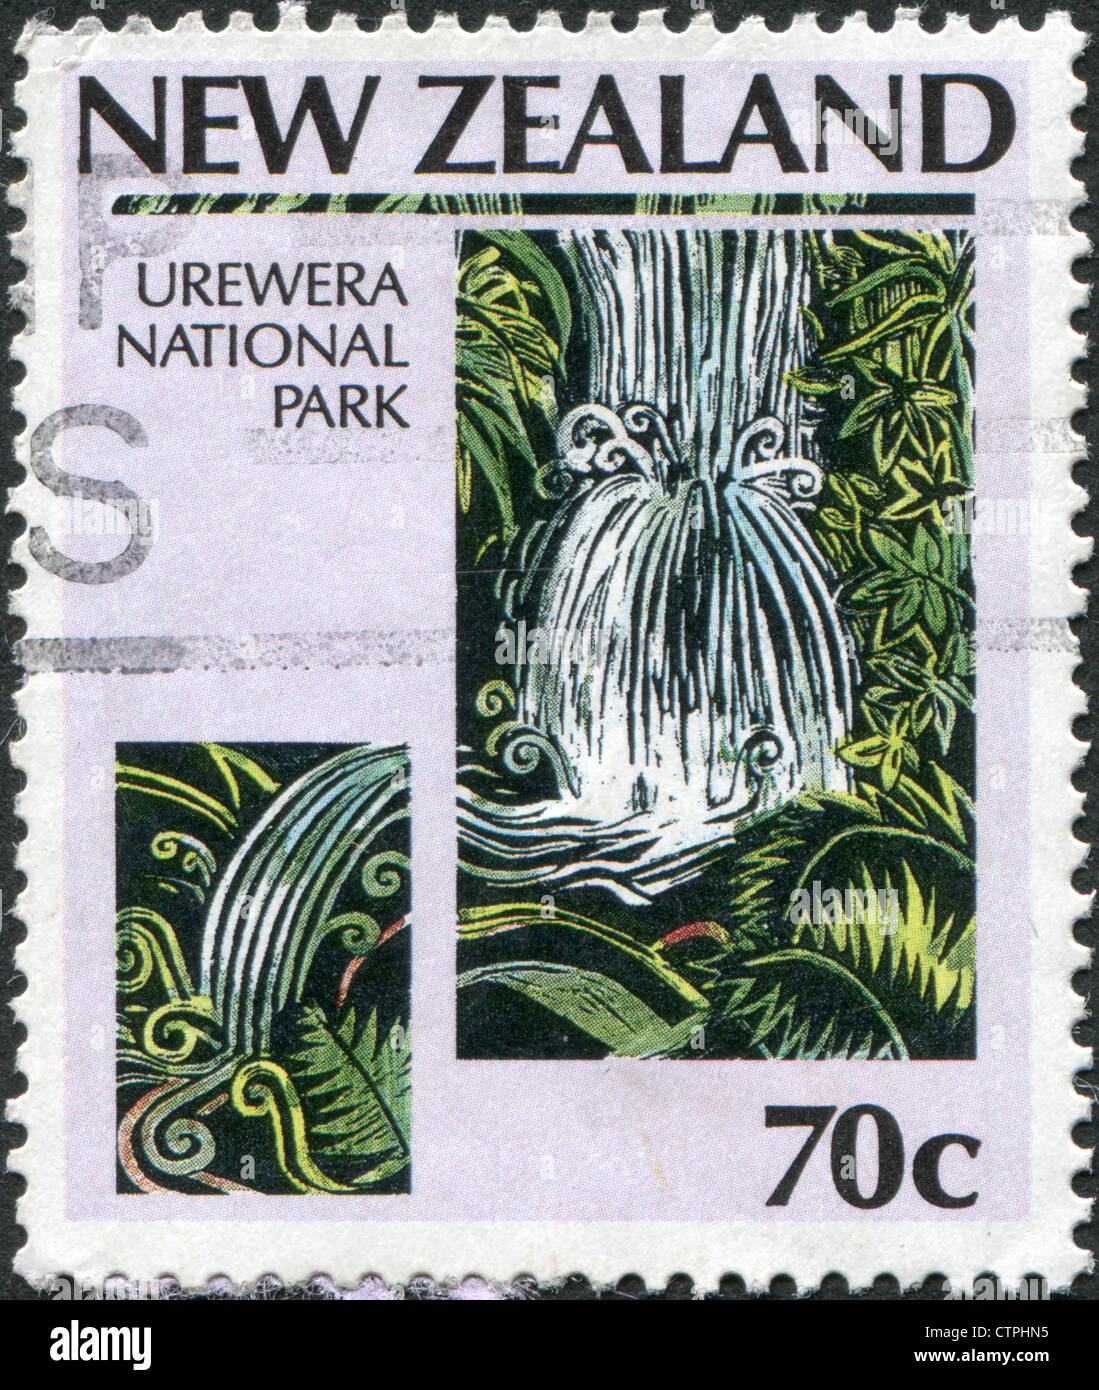 Timbres-poste imprimés en Nouvelle-Zélande, est dédiée à la célébration du 100e anniversaire du parc national, parc montre Urewera Banque D'Images